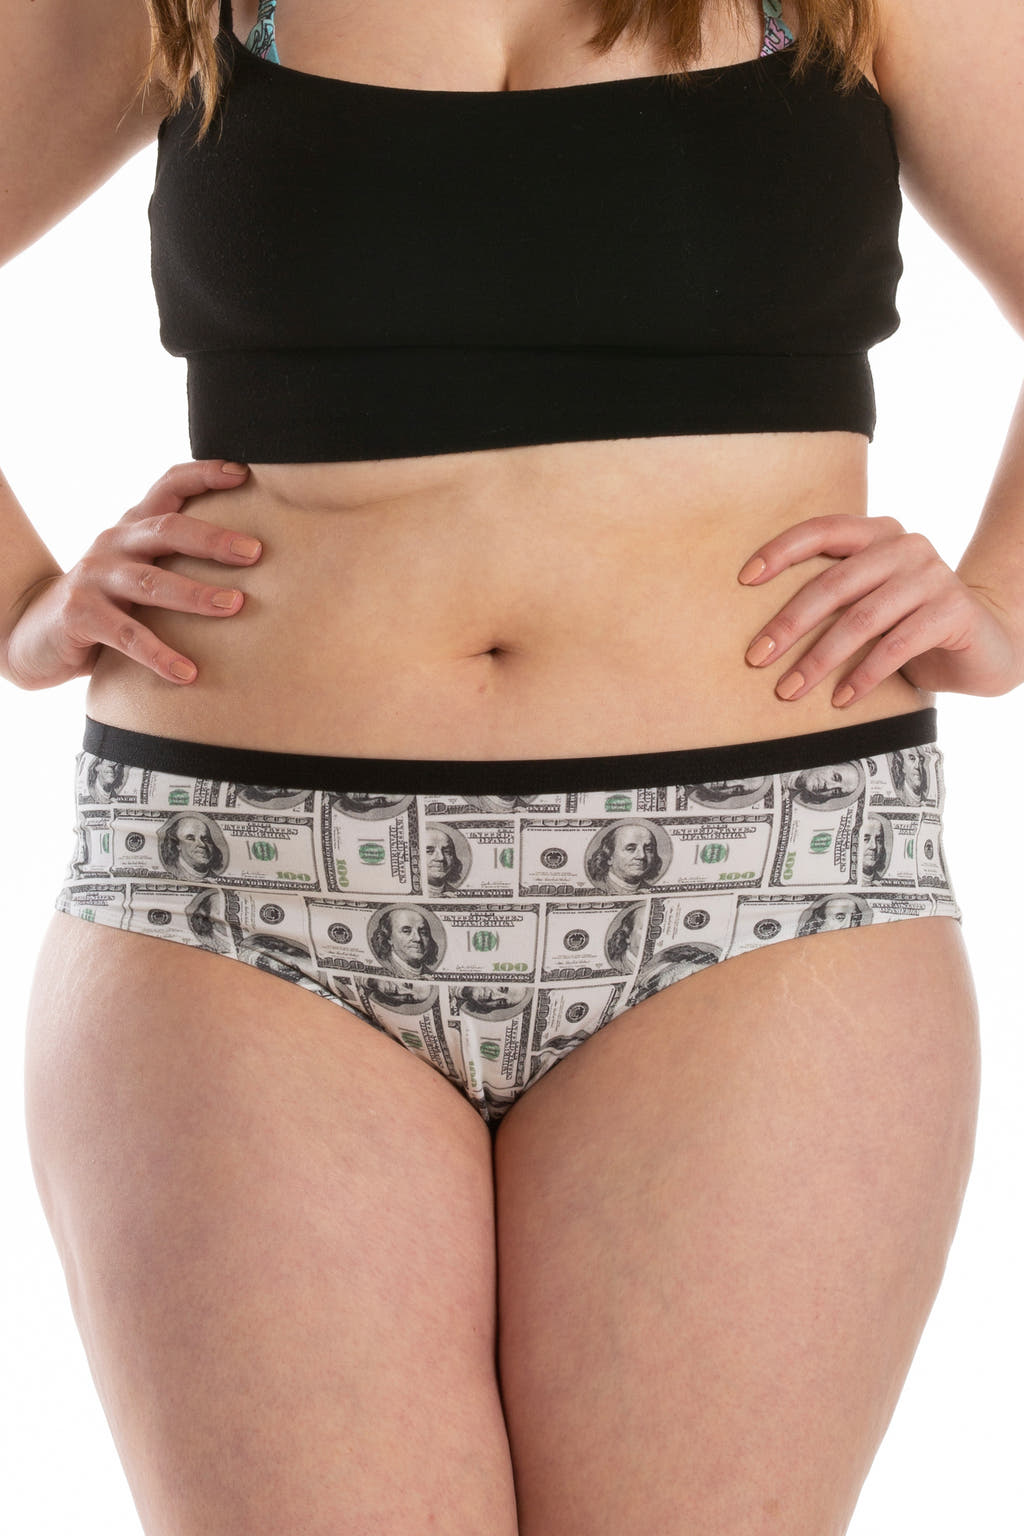 women's money cheeky underwear